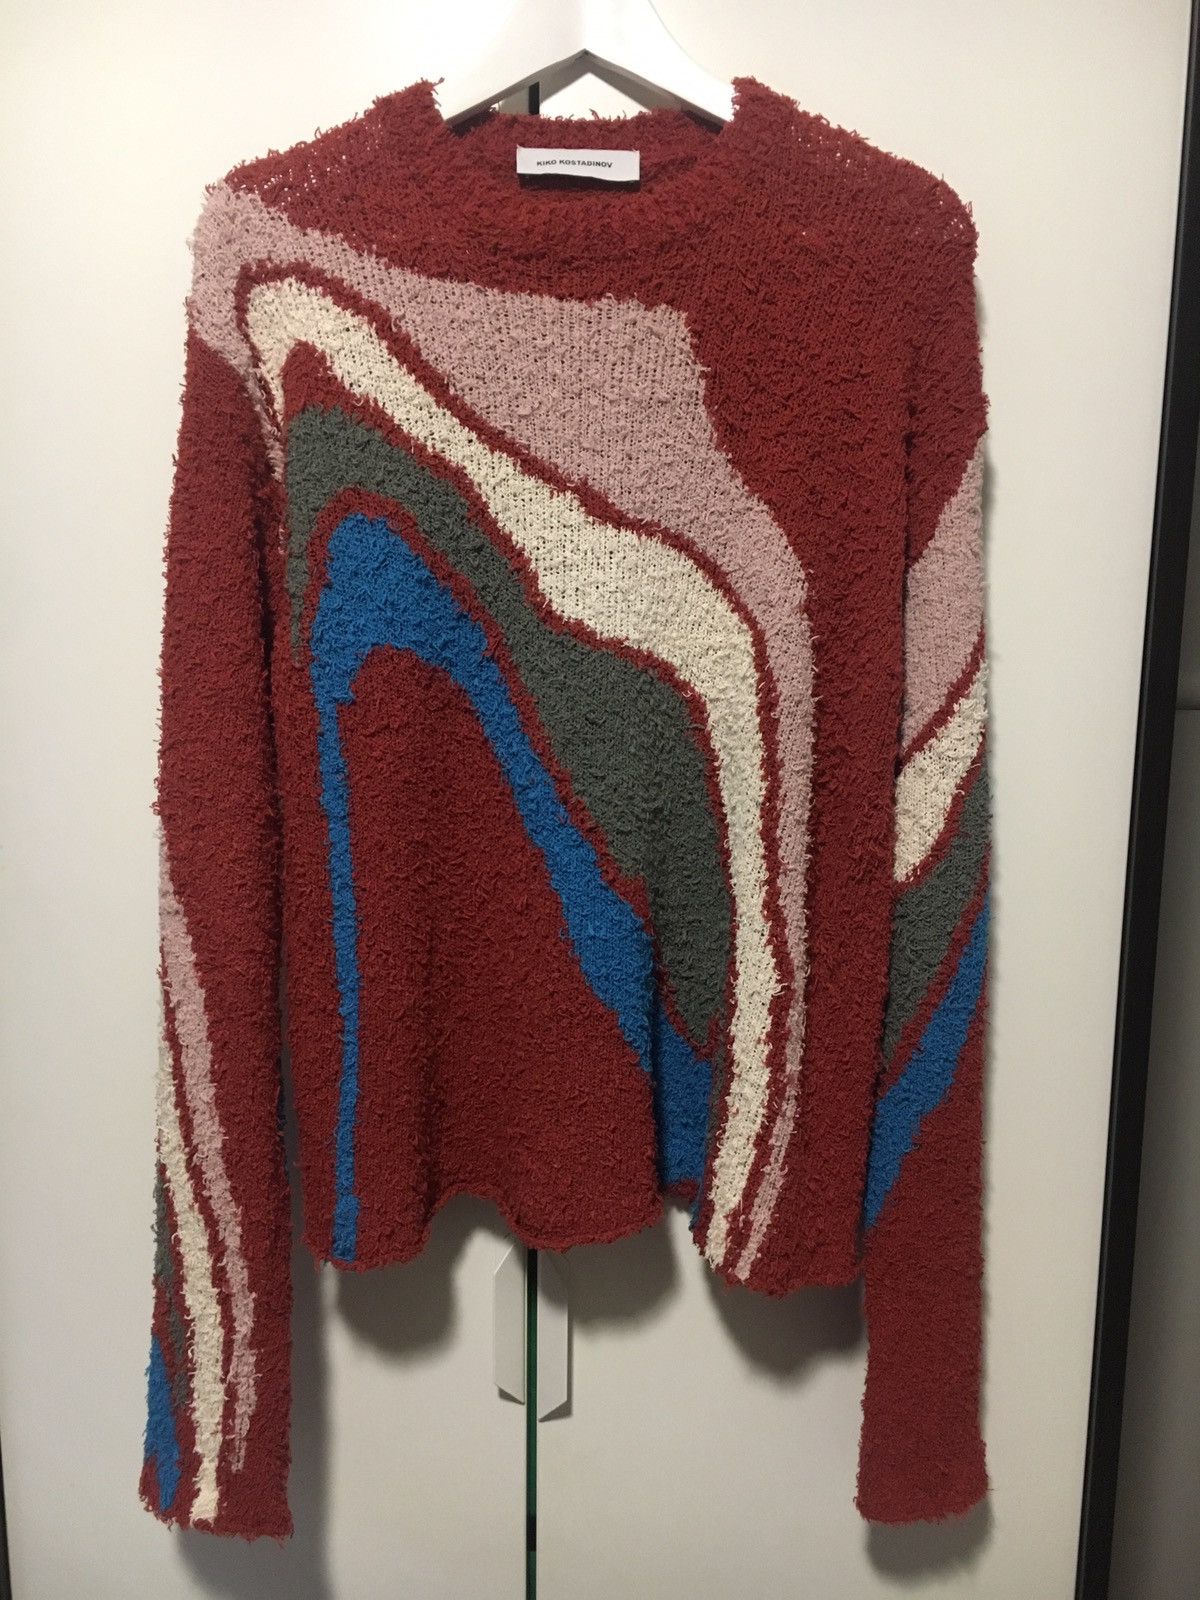 Kiko Kostadinov Terracotta Delva body Intarsia Sweater | Grailed